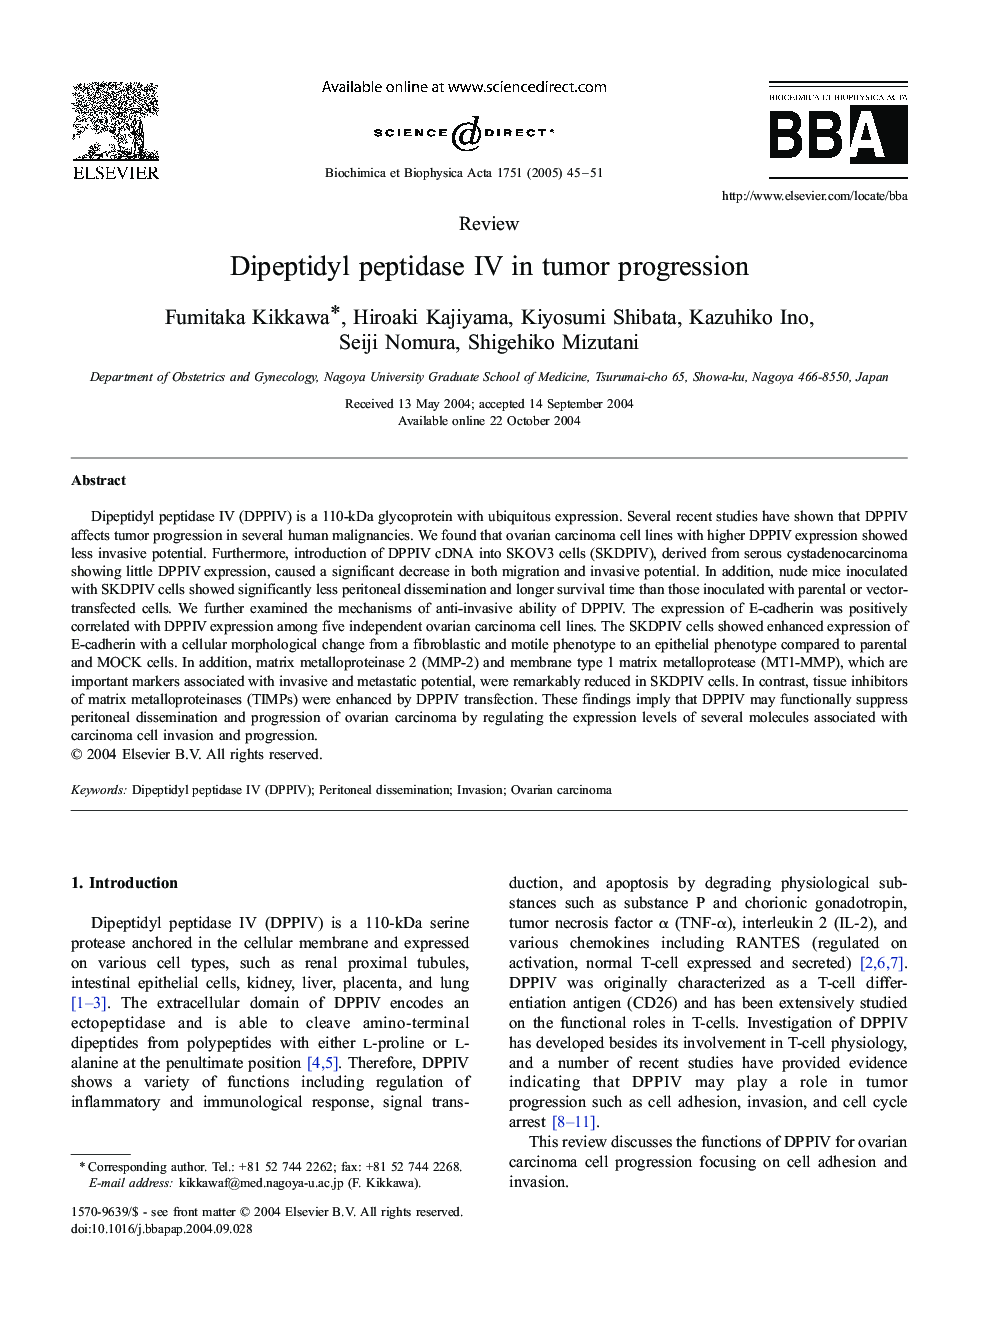 Dipeptidyl peptidase IV in tumor progression